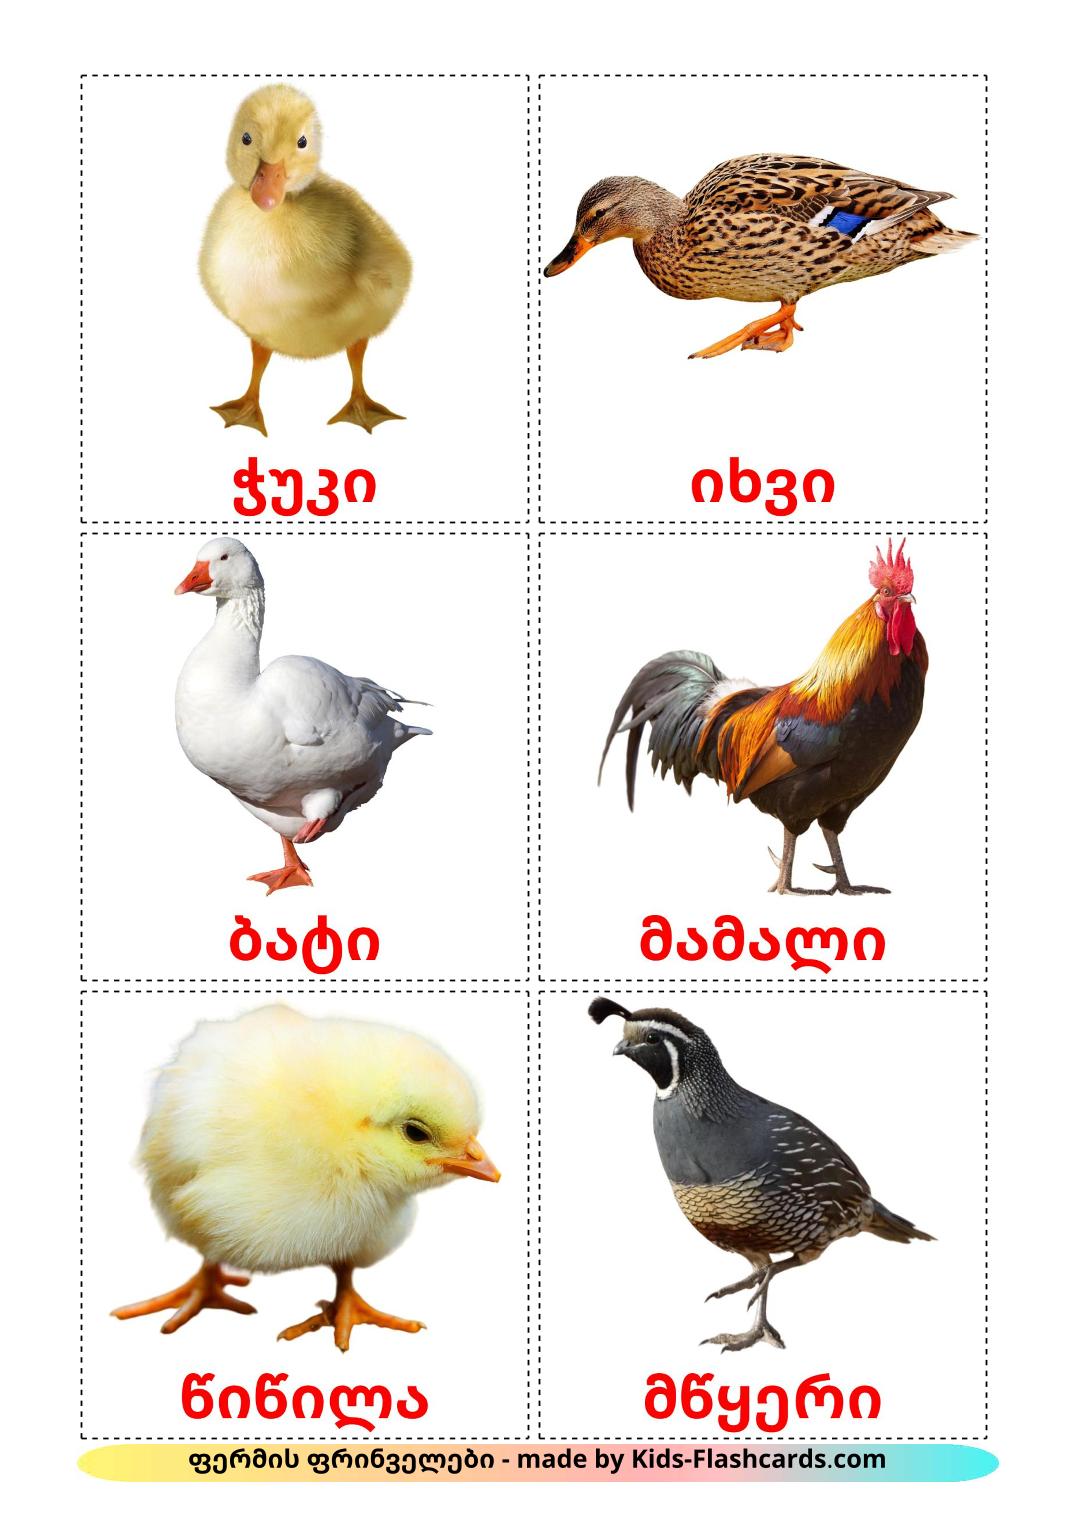 Aves da Quinta - 11 Flashcards polimentoes gratuitos para impressão